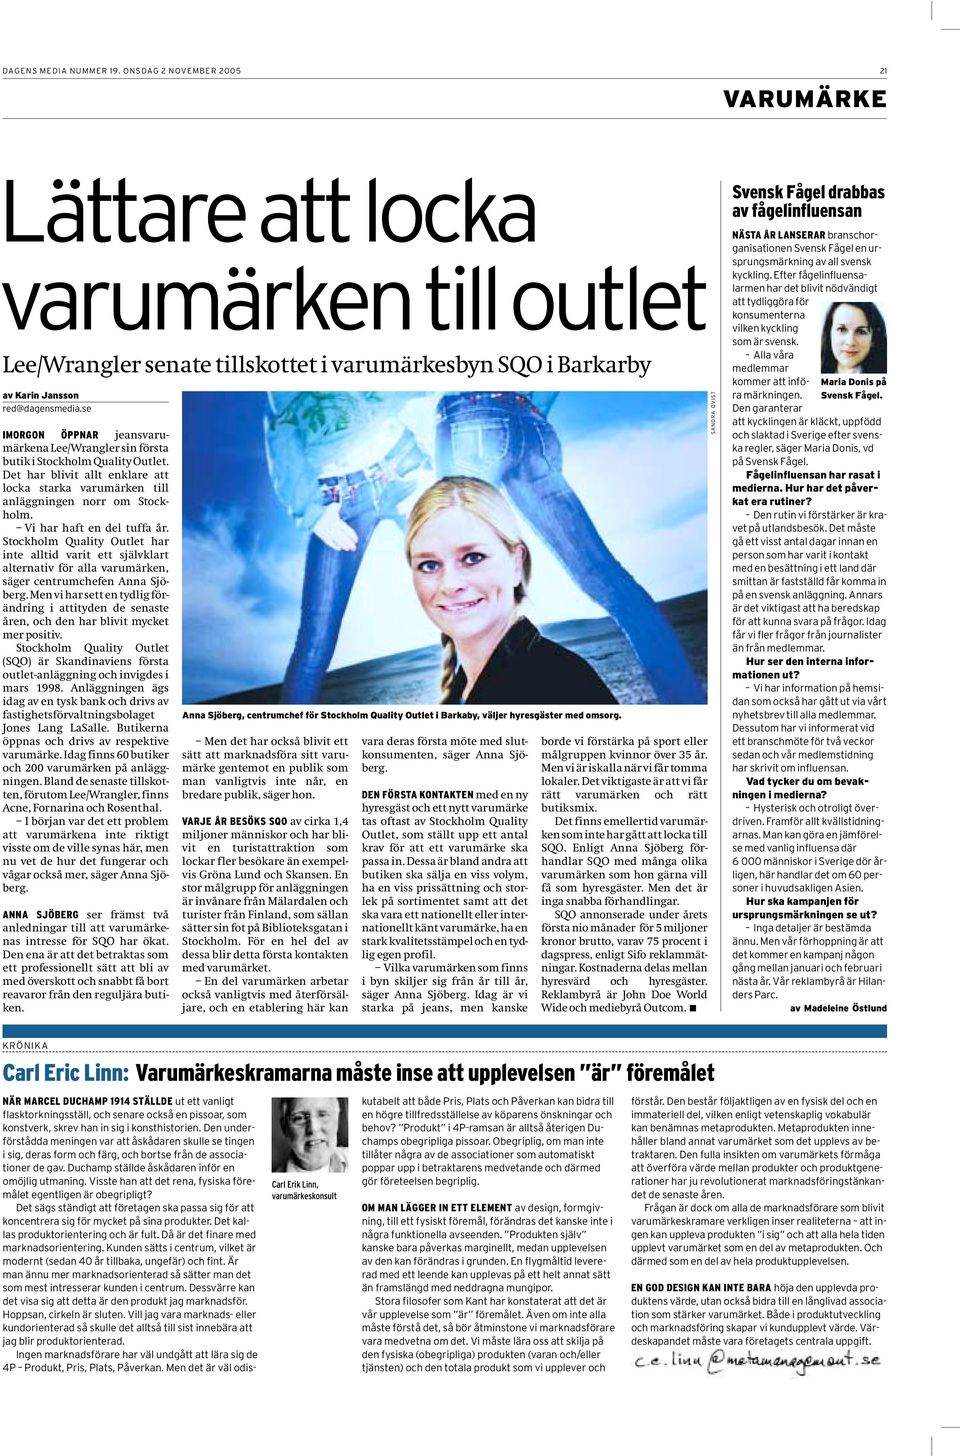 Vi har haft en del tuffa år. Stockholm Quality Outlet har inte alltid varit ett självklart alternativ för alla varumärken, säger centrumchefen Anna Sjöberg.